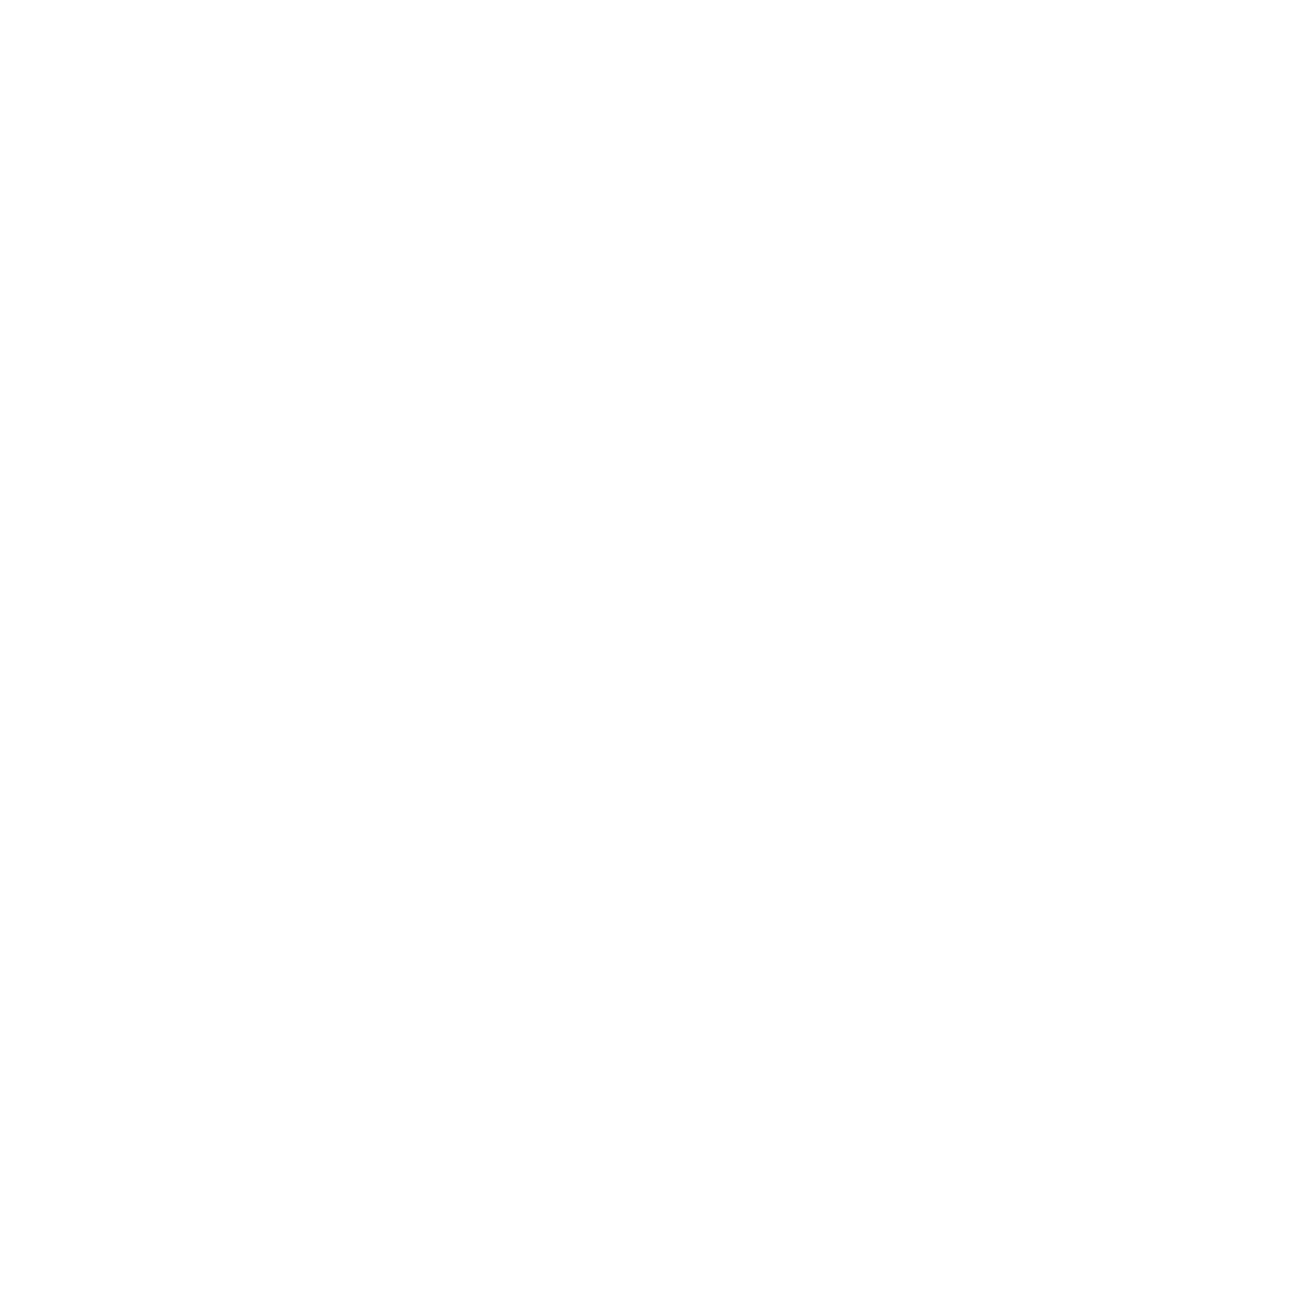 Iphone 6 Slim Case Iphone 6 Slim Case - Mobile Phone Case (1300x1300)